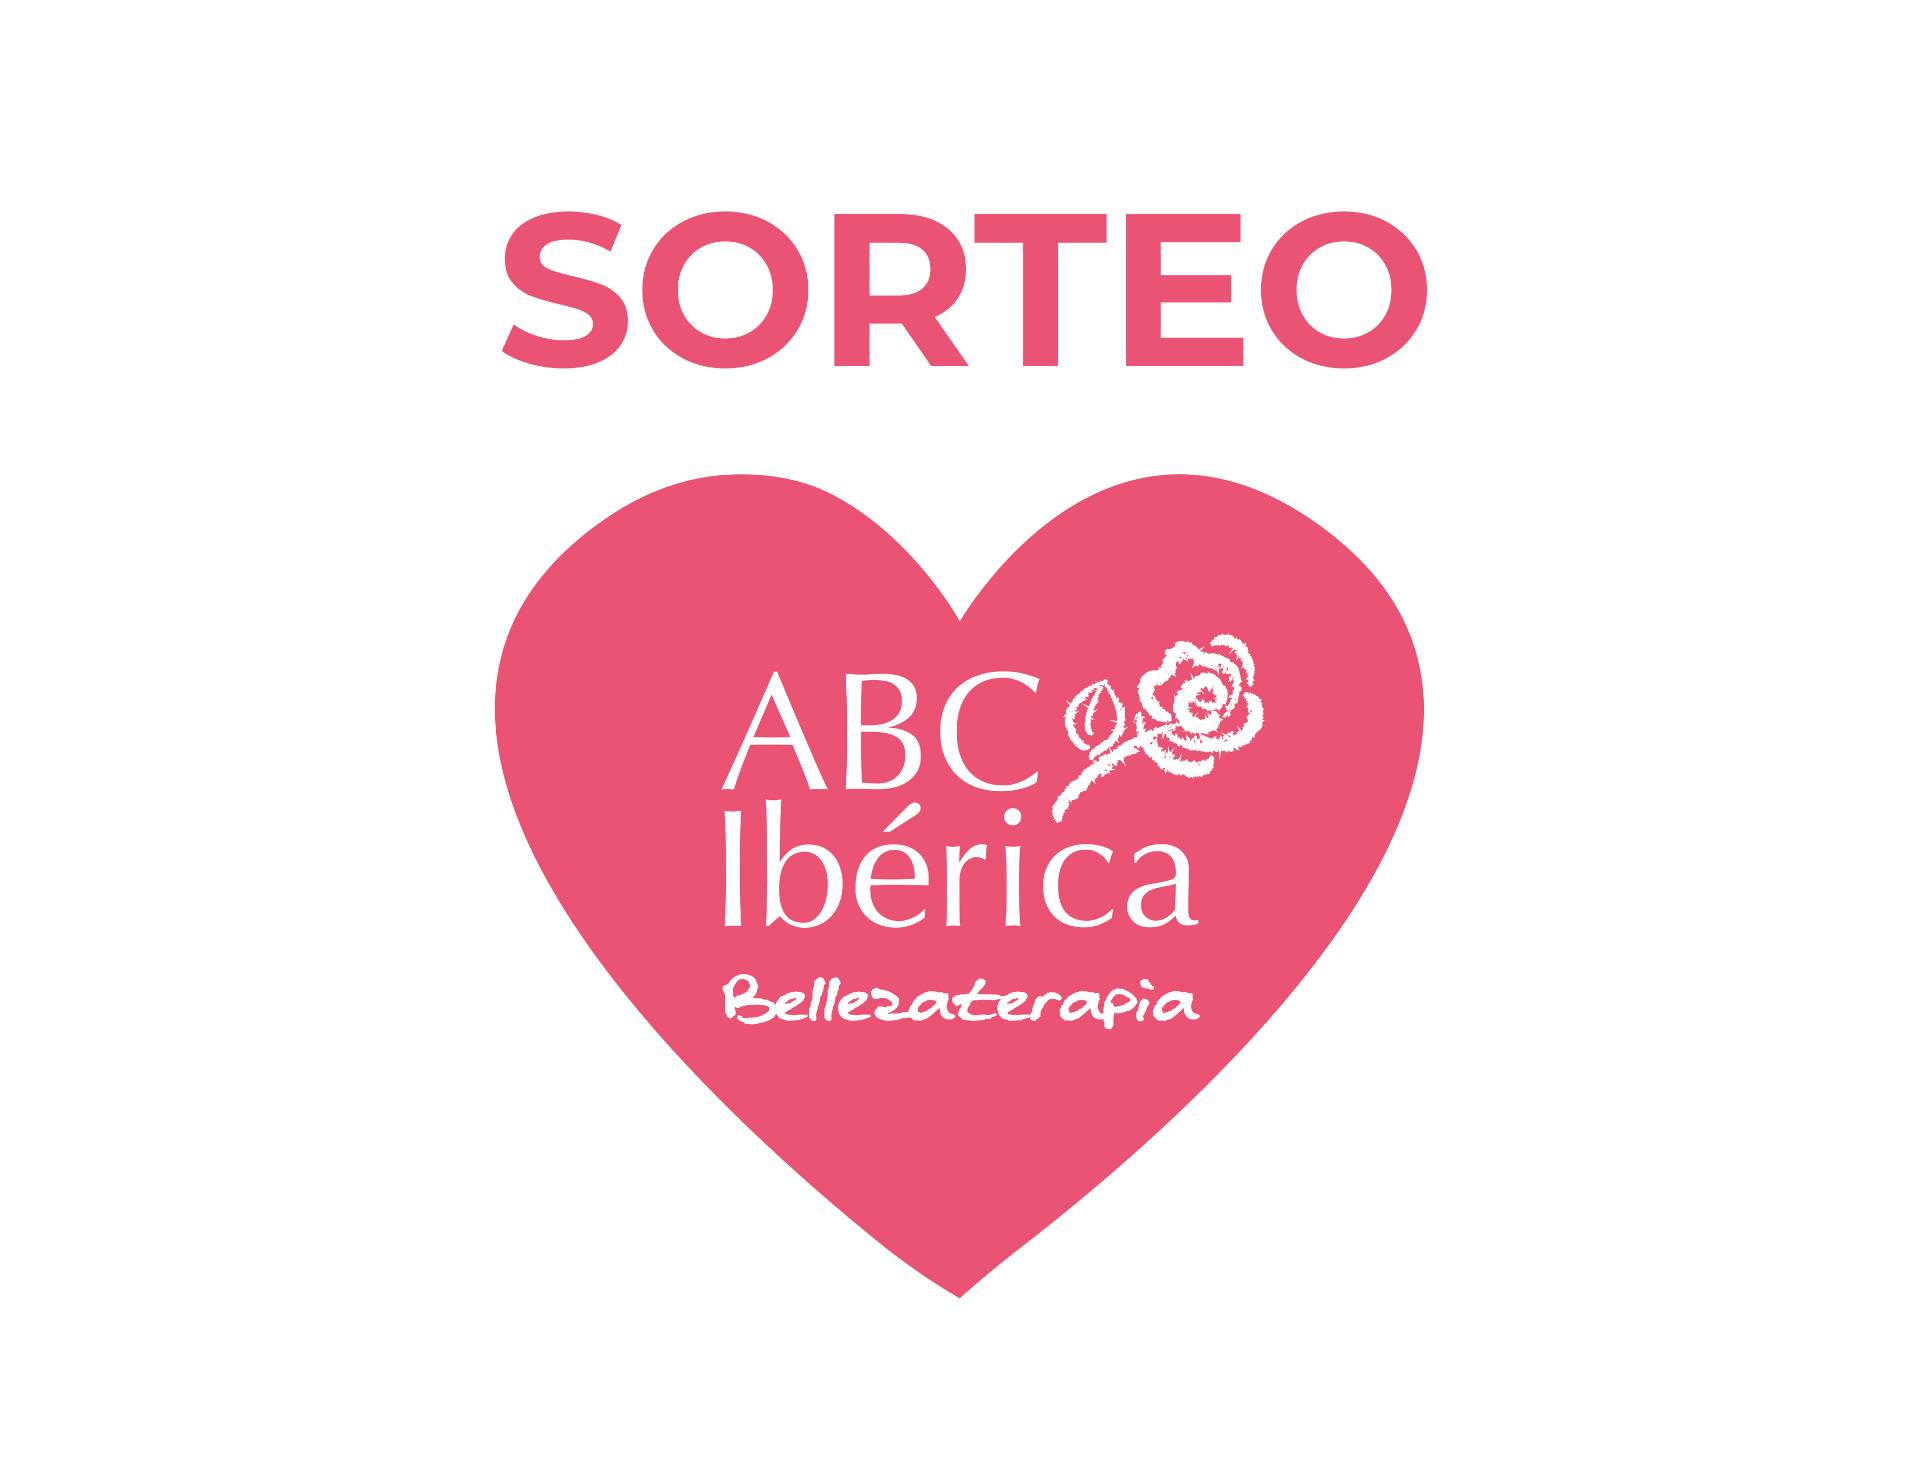 Ganadora del sorteo en Facebook - ABC Breast Care Ibérica